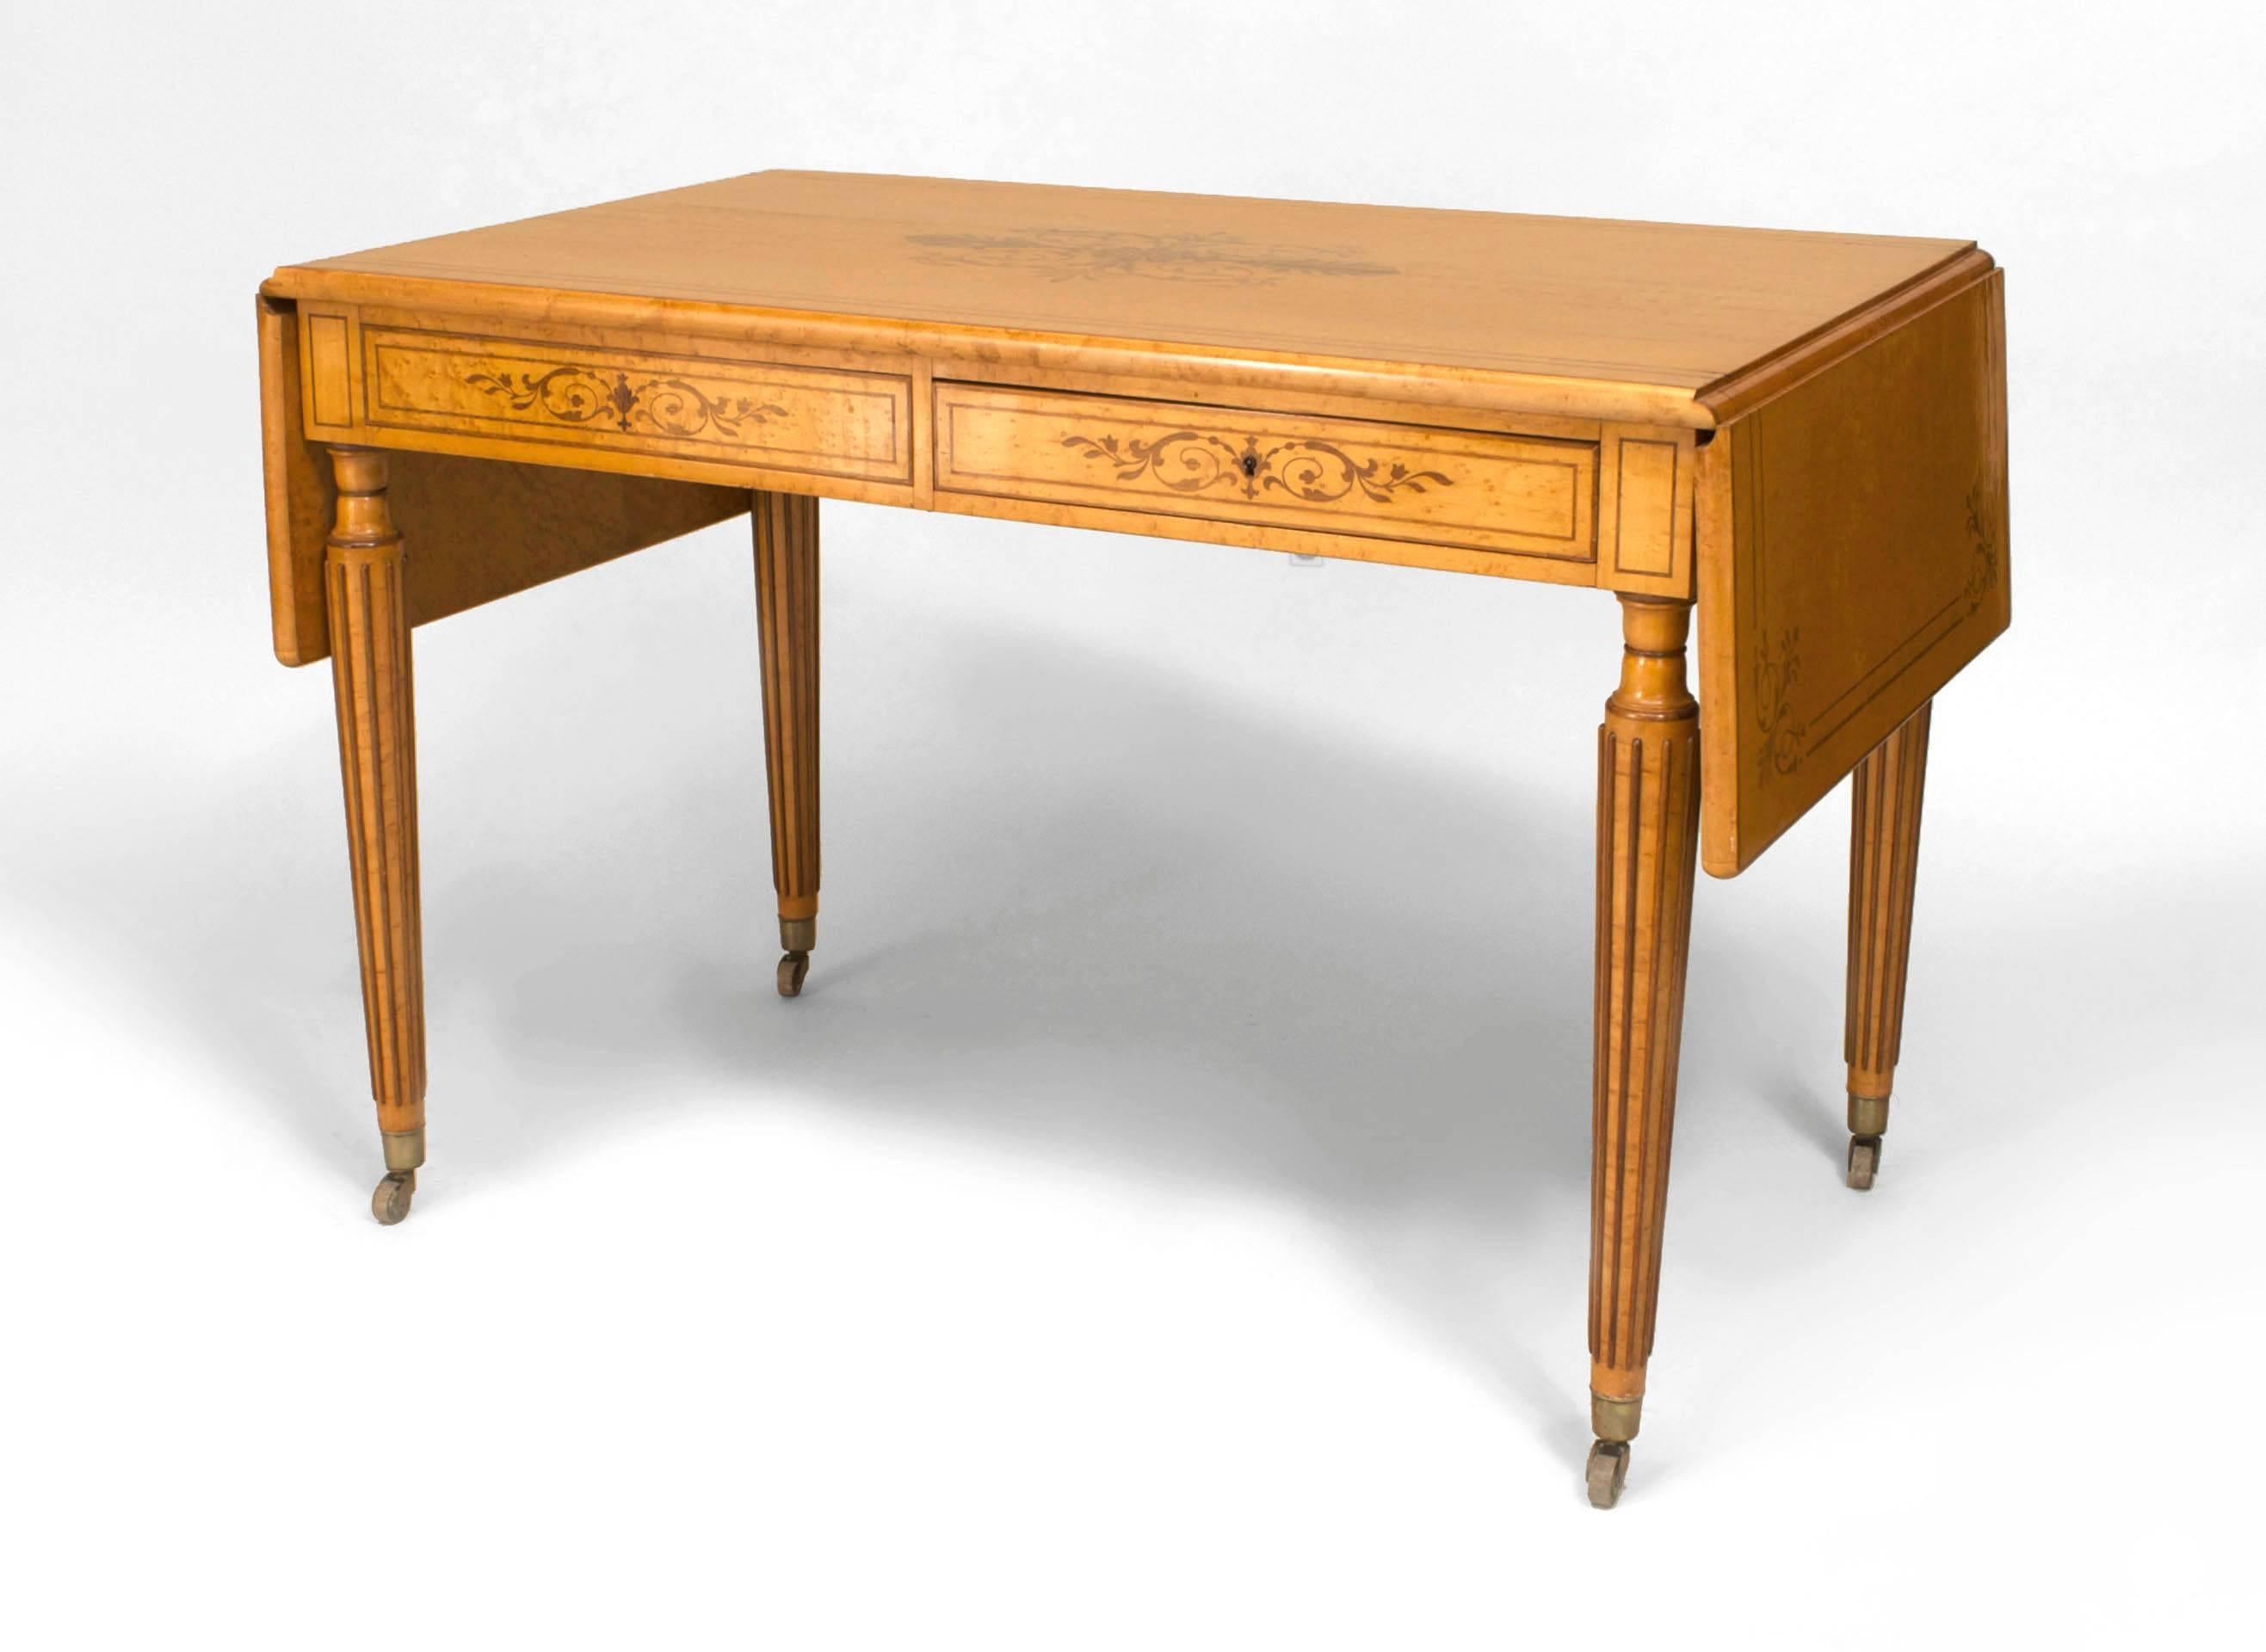 Bureau de table Charles X français en érable piqué avec marqueterie d'amarante et côtés tombants supportés par 4 pieds fuselés cannelés avec un seul tiroir à l'avant et à l'arrière.
